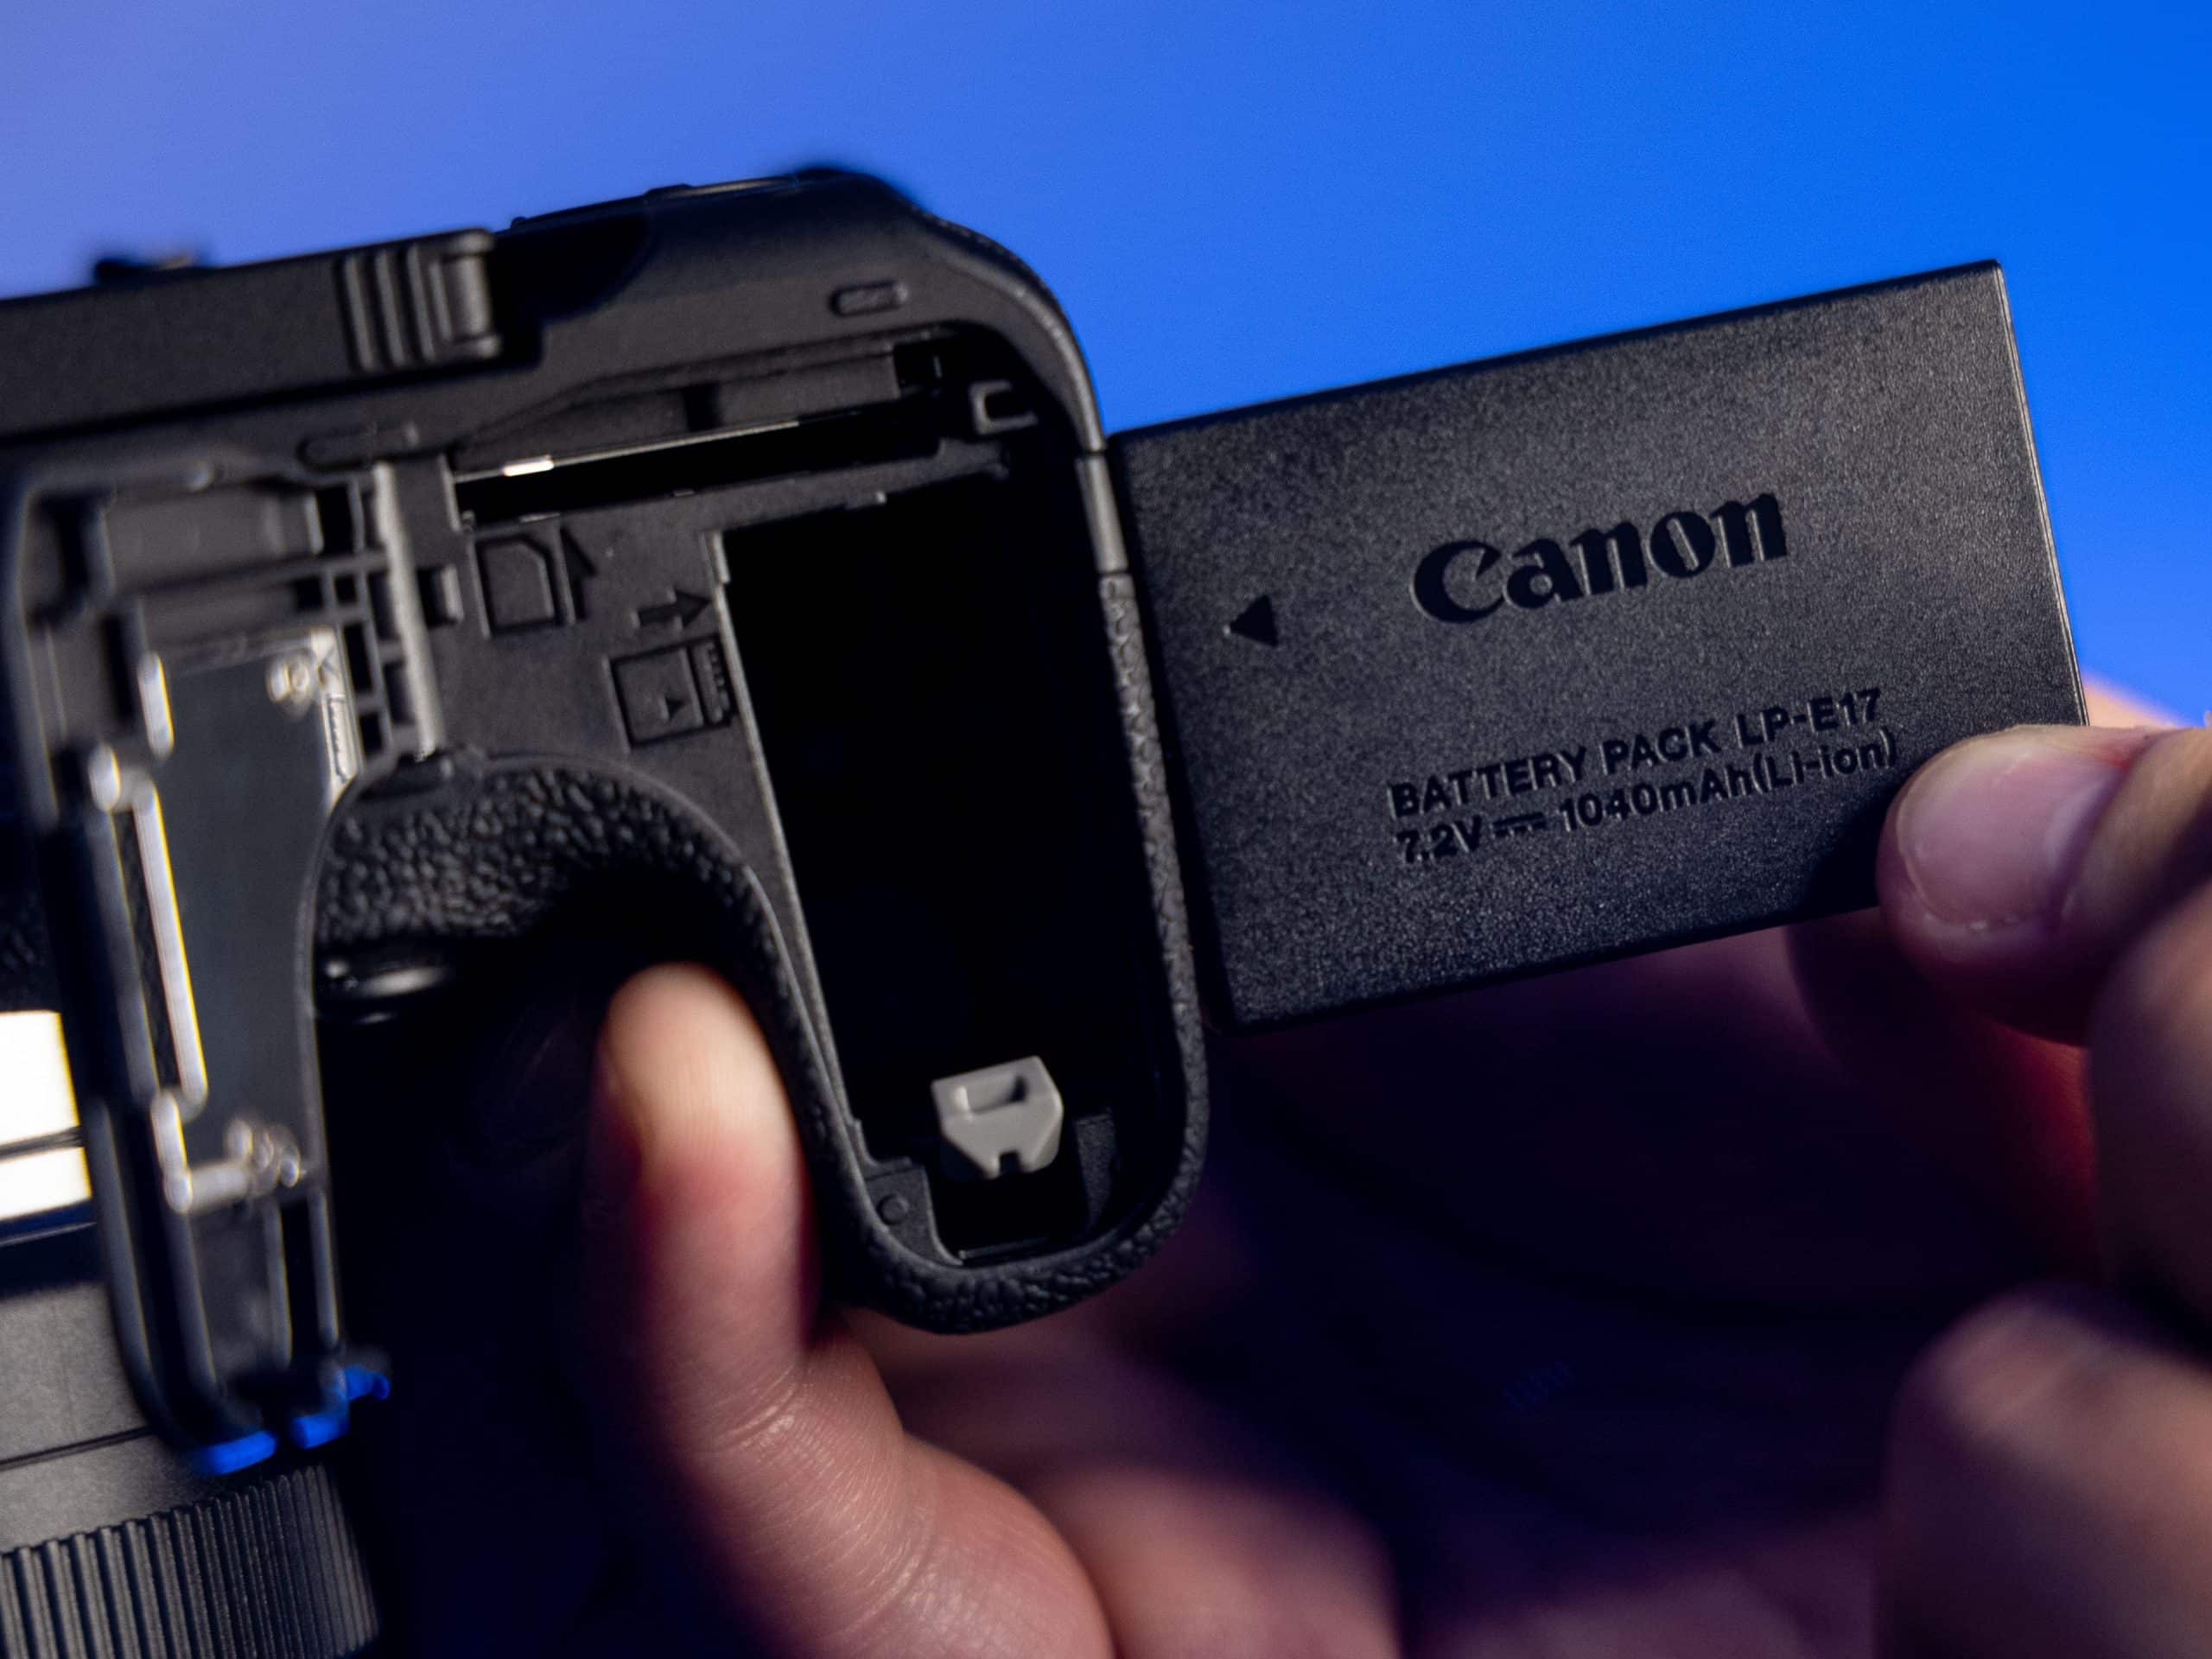 Canon EOS R10 ra mắt với cảm biến APS-C 24MP và giá 979 USD